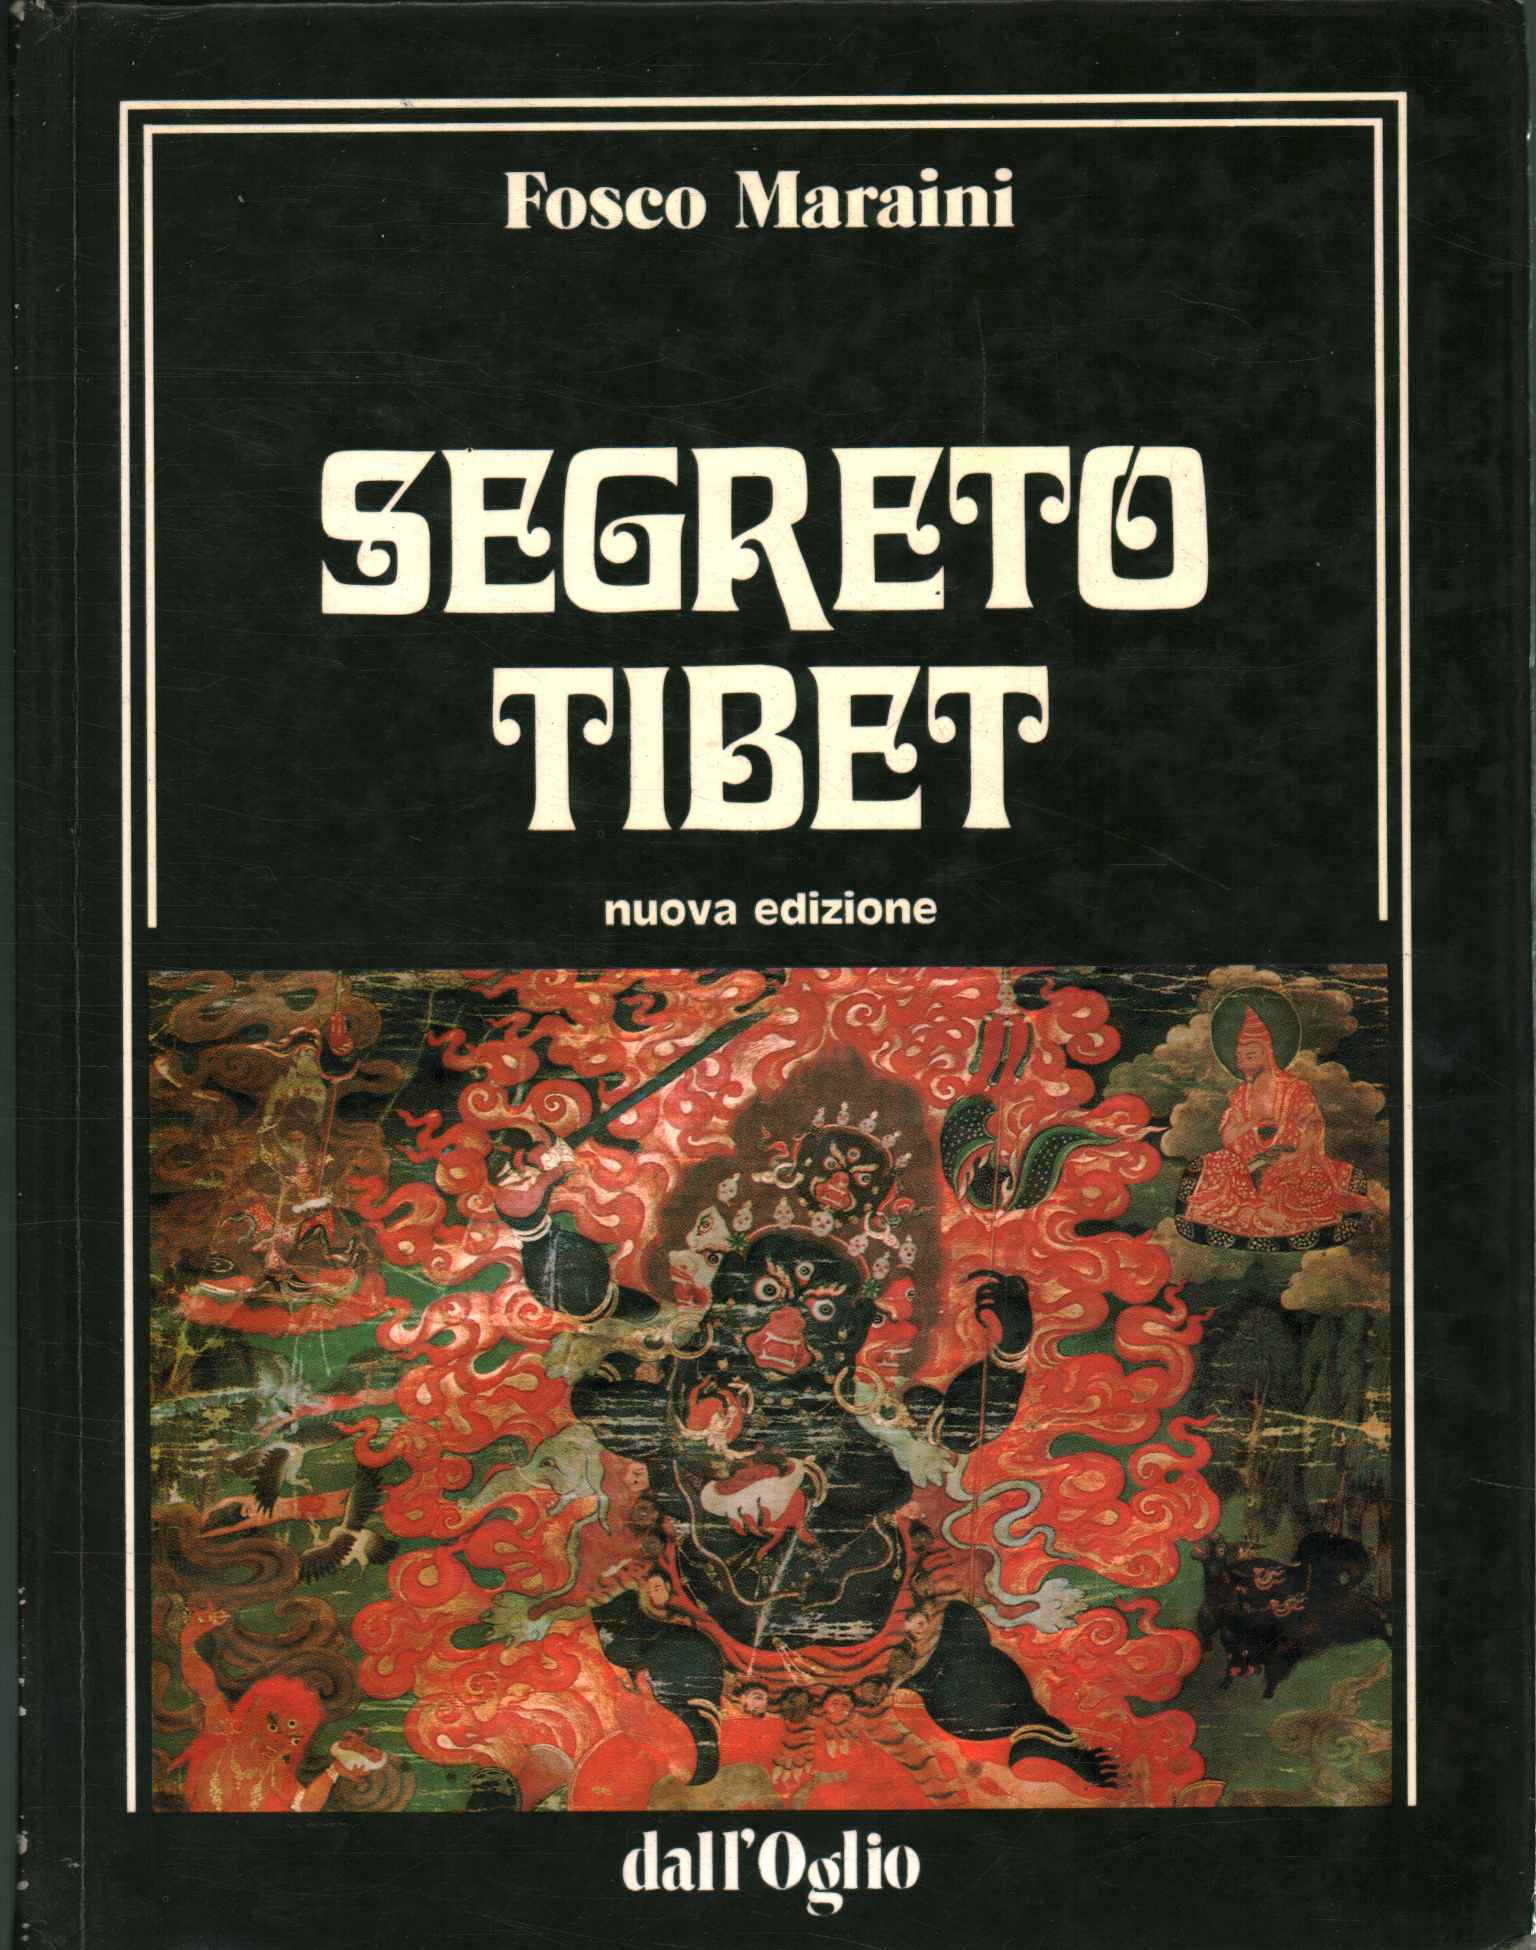 Tíbet secreto